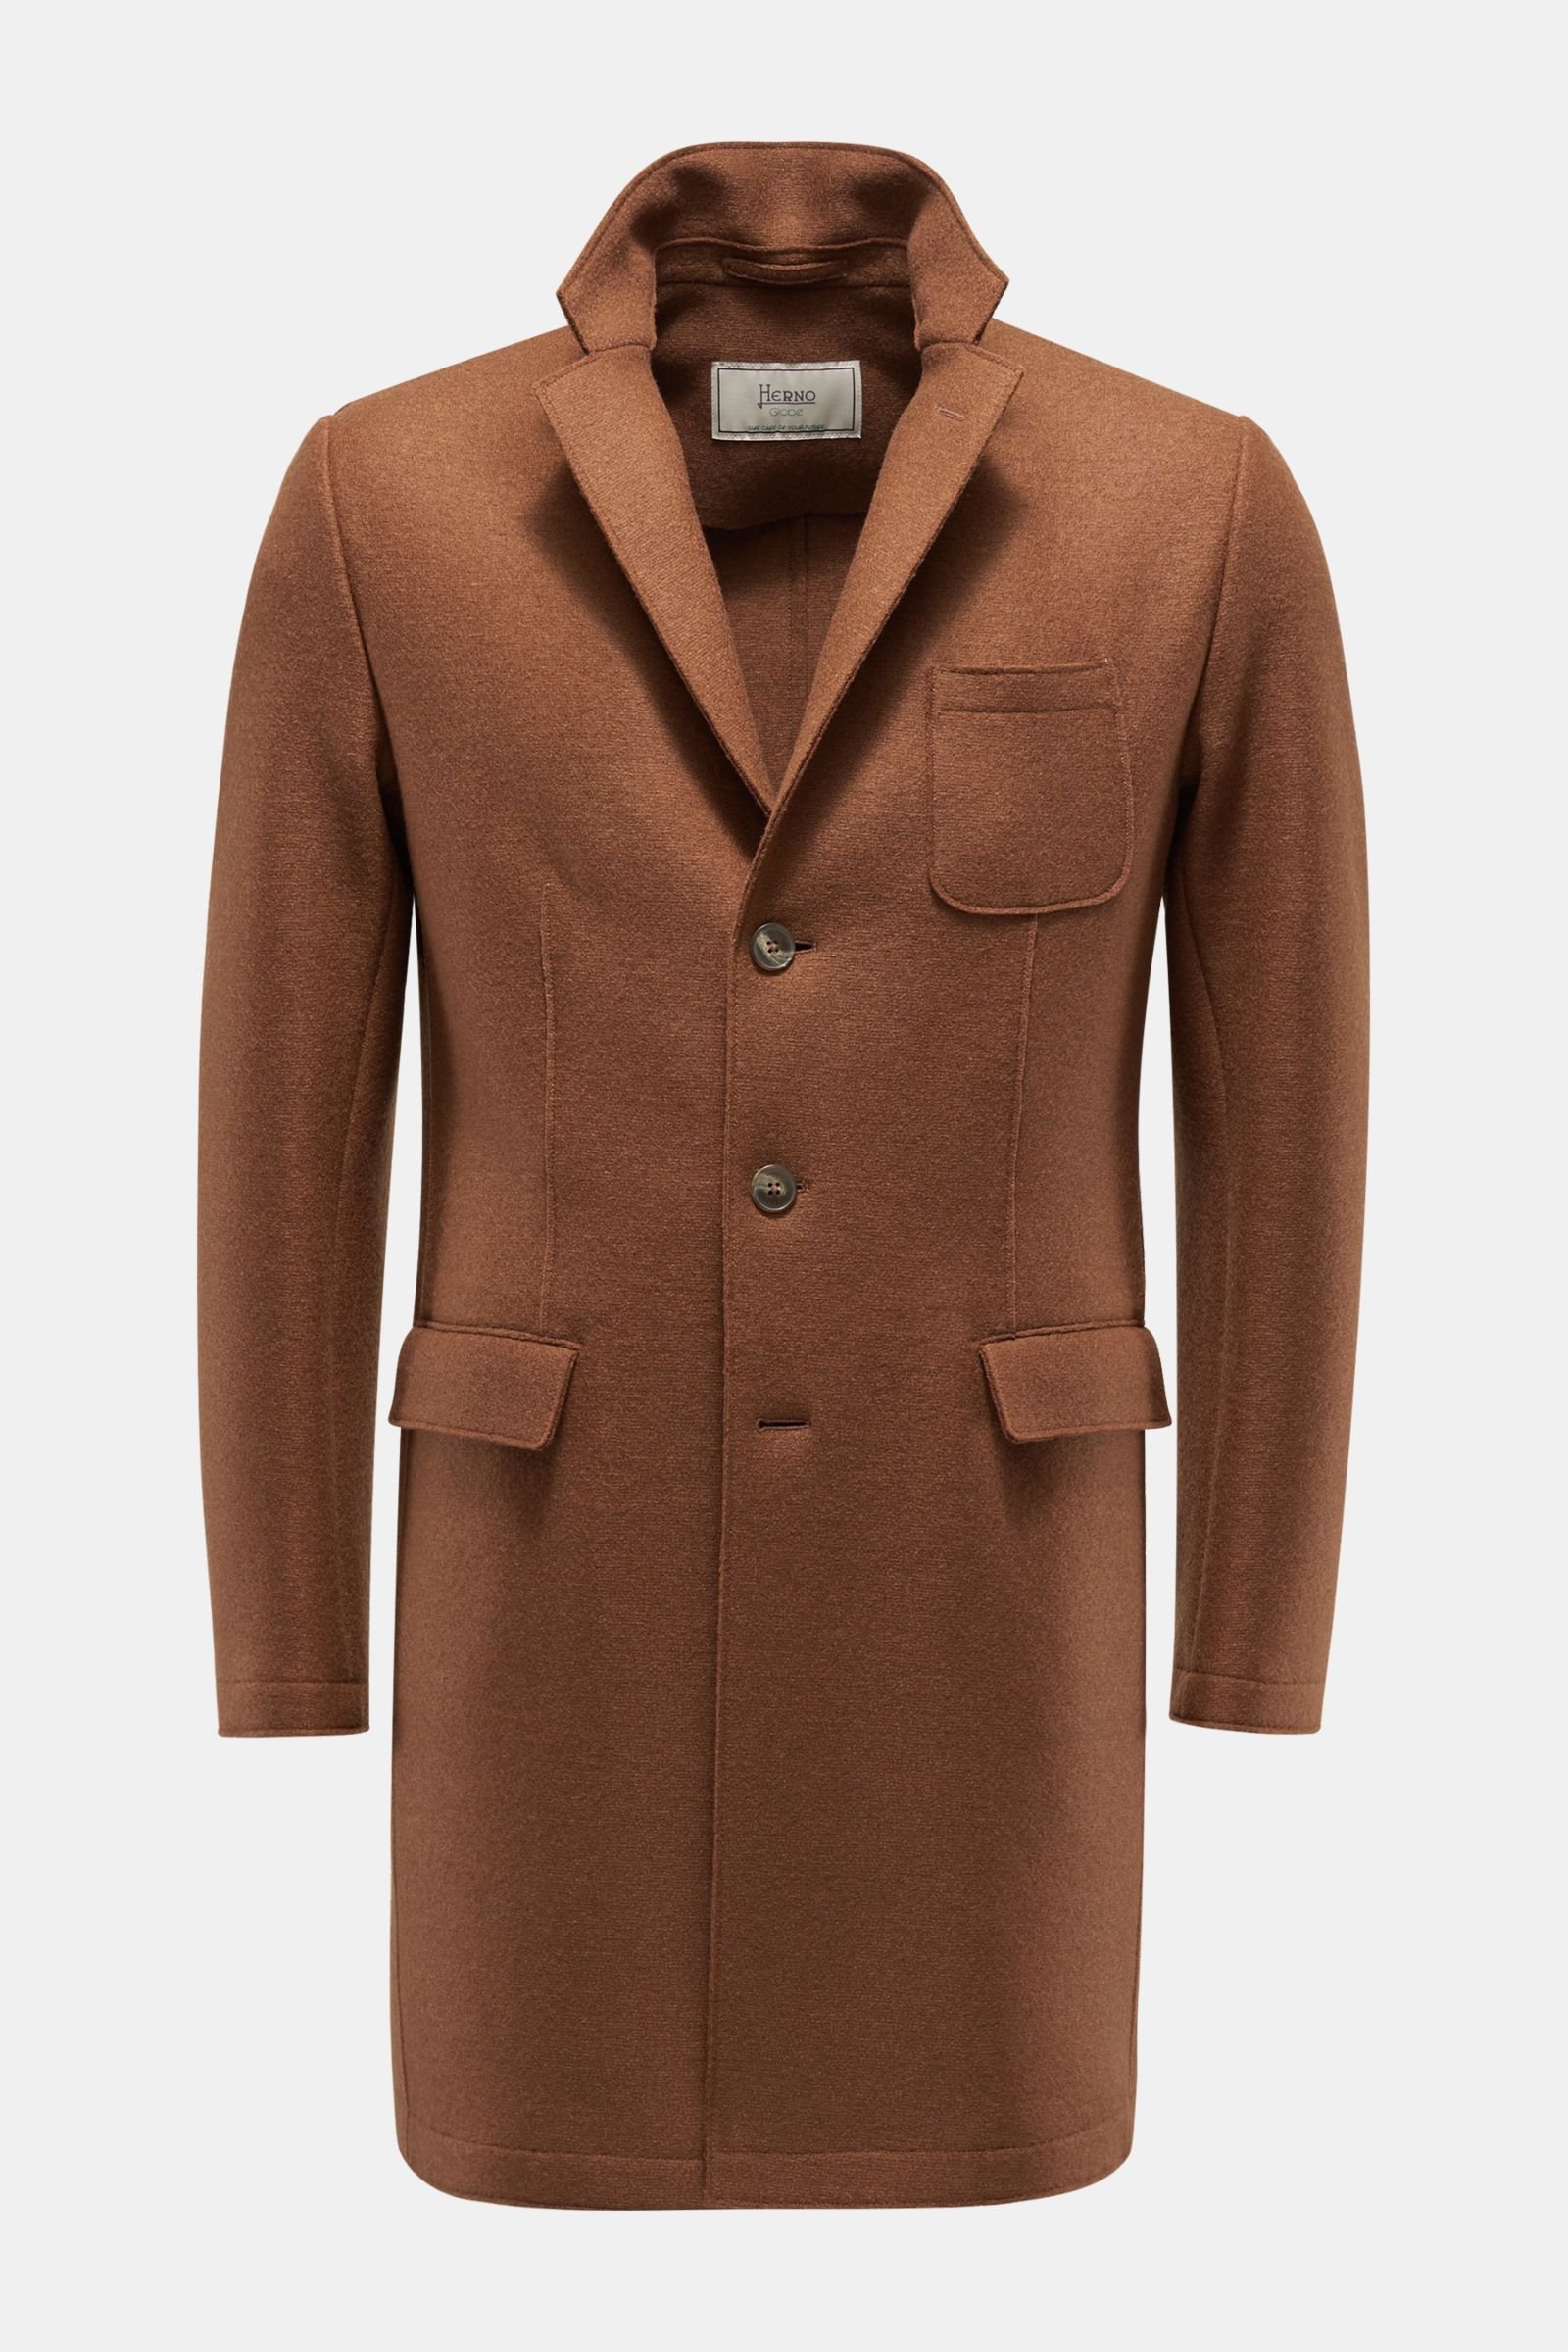 Wool coat brown 